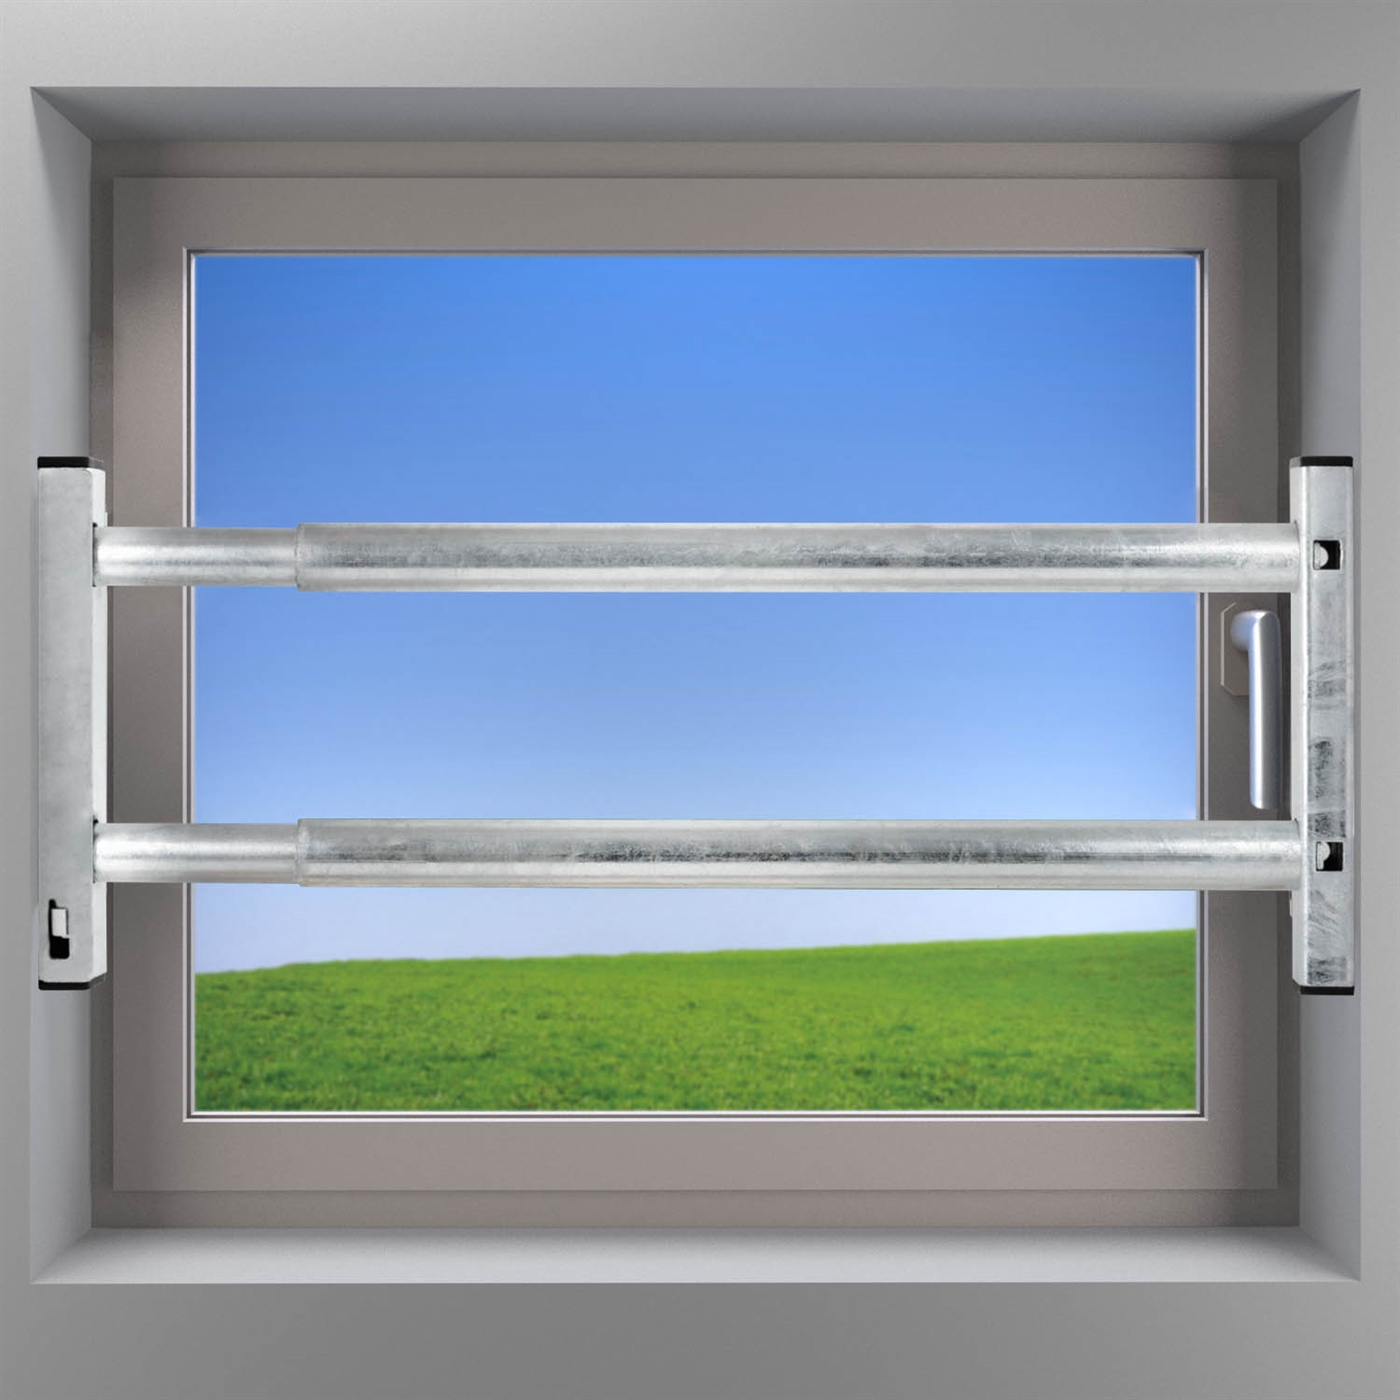 Fenstersicherung kaufen - Einbruchschutz für Fenster